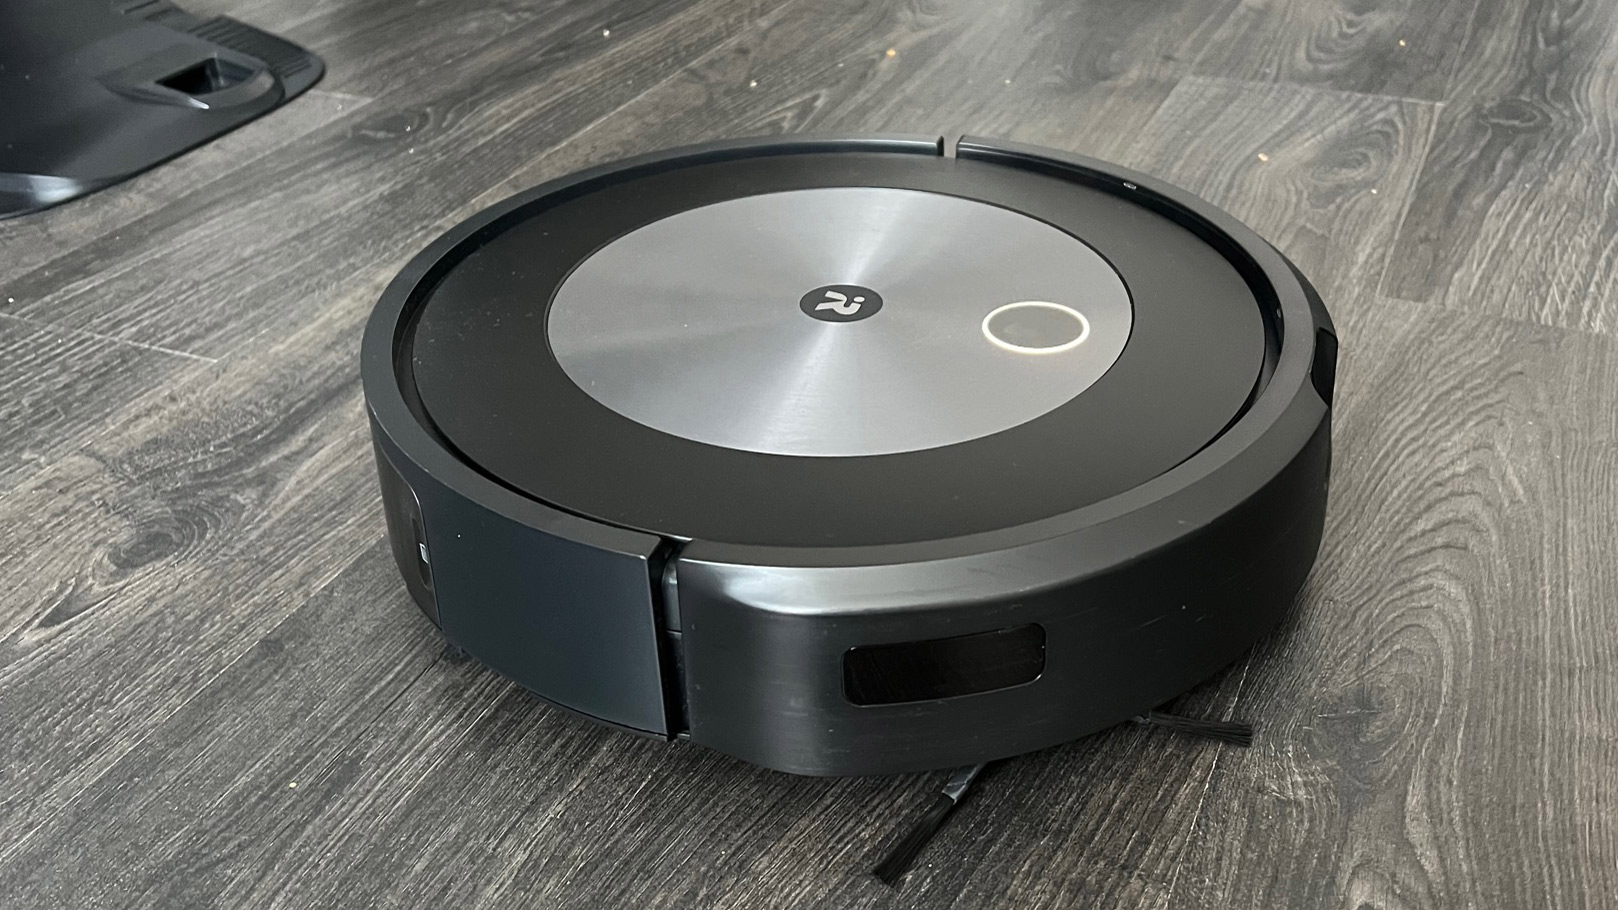 Halaman iRobot Roomba J7+